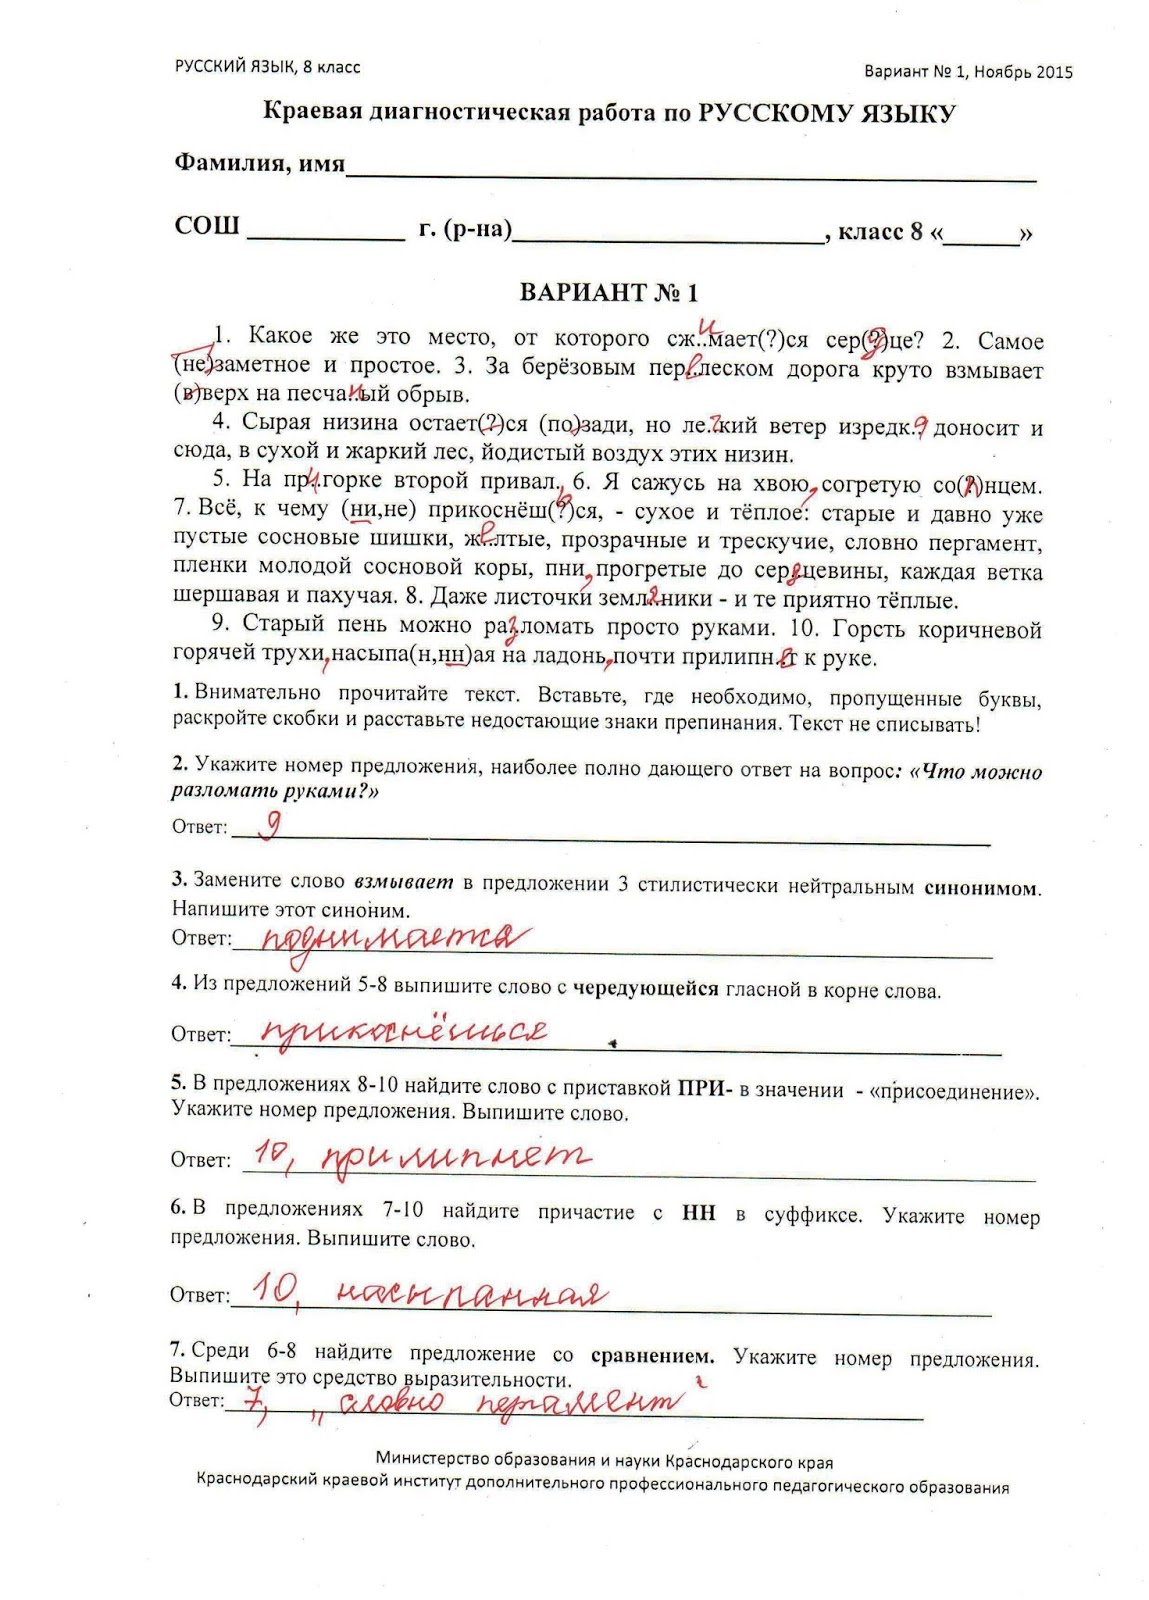 Краевая диагностическая работа по русскому языку 8 класса ноябрь